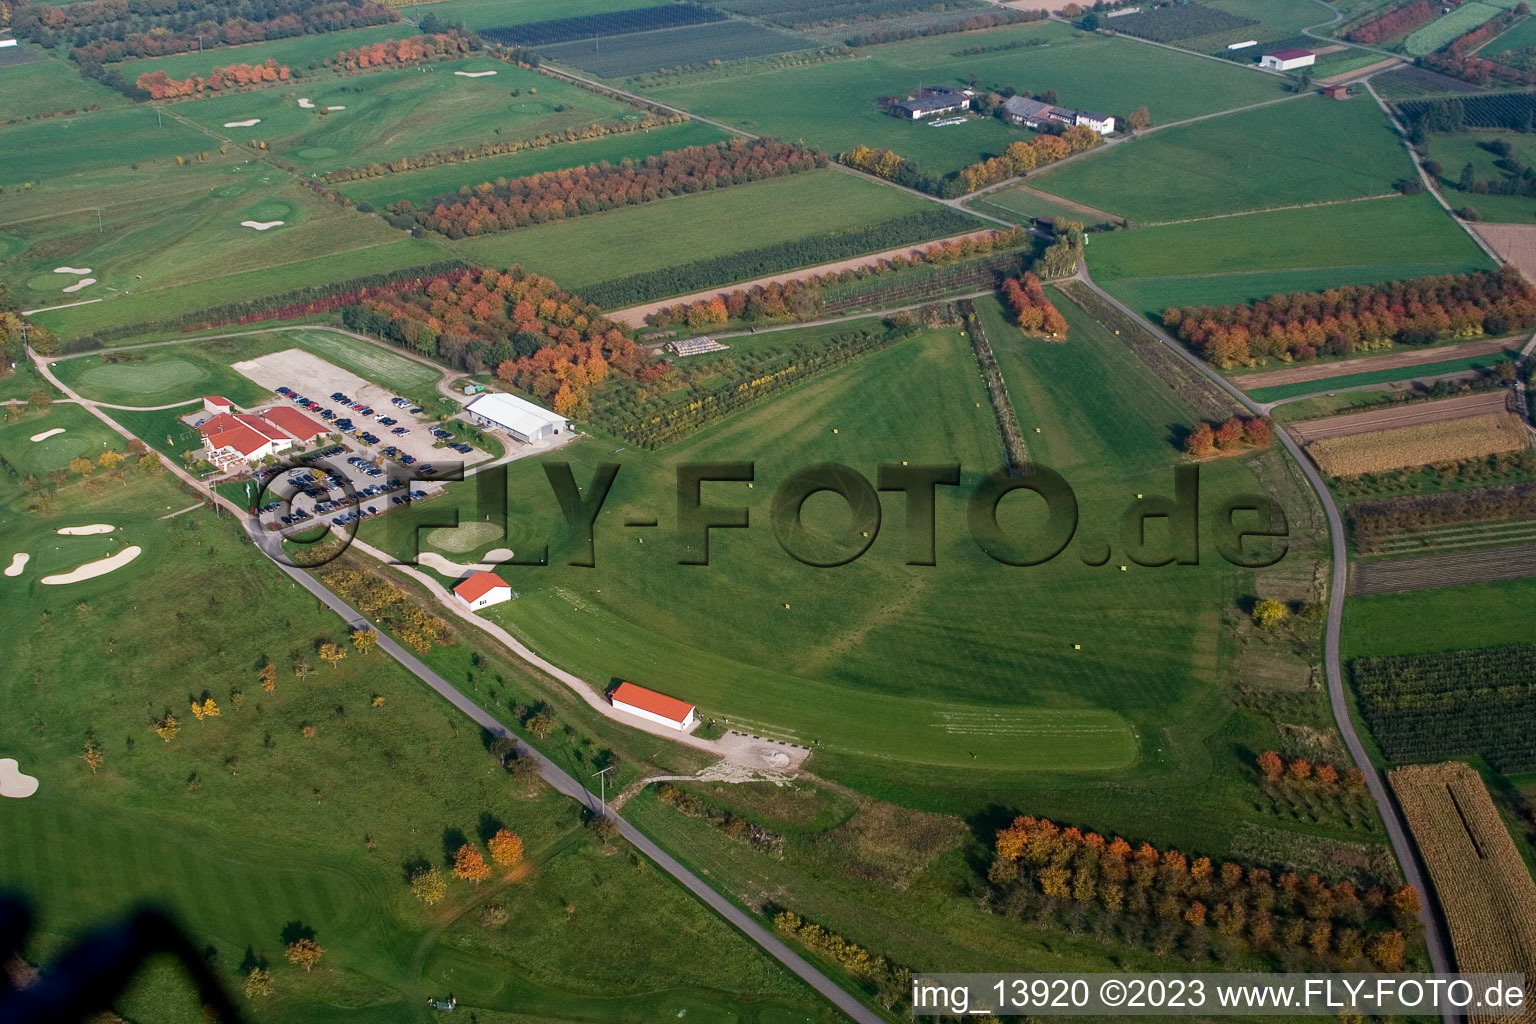 Club de golf Urloffen eV à le quartier Urloffen in Appenweier dans le département Bade-Wurtemberg, Allemagne du point de vue du drone